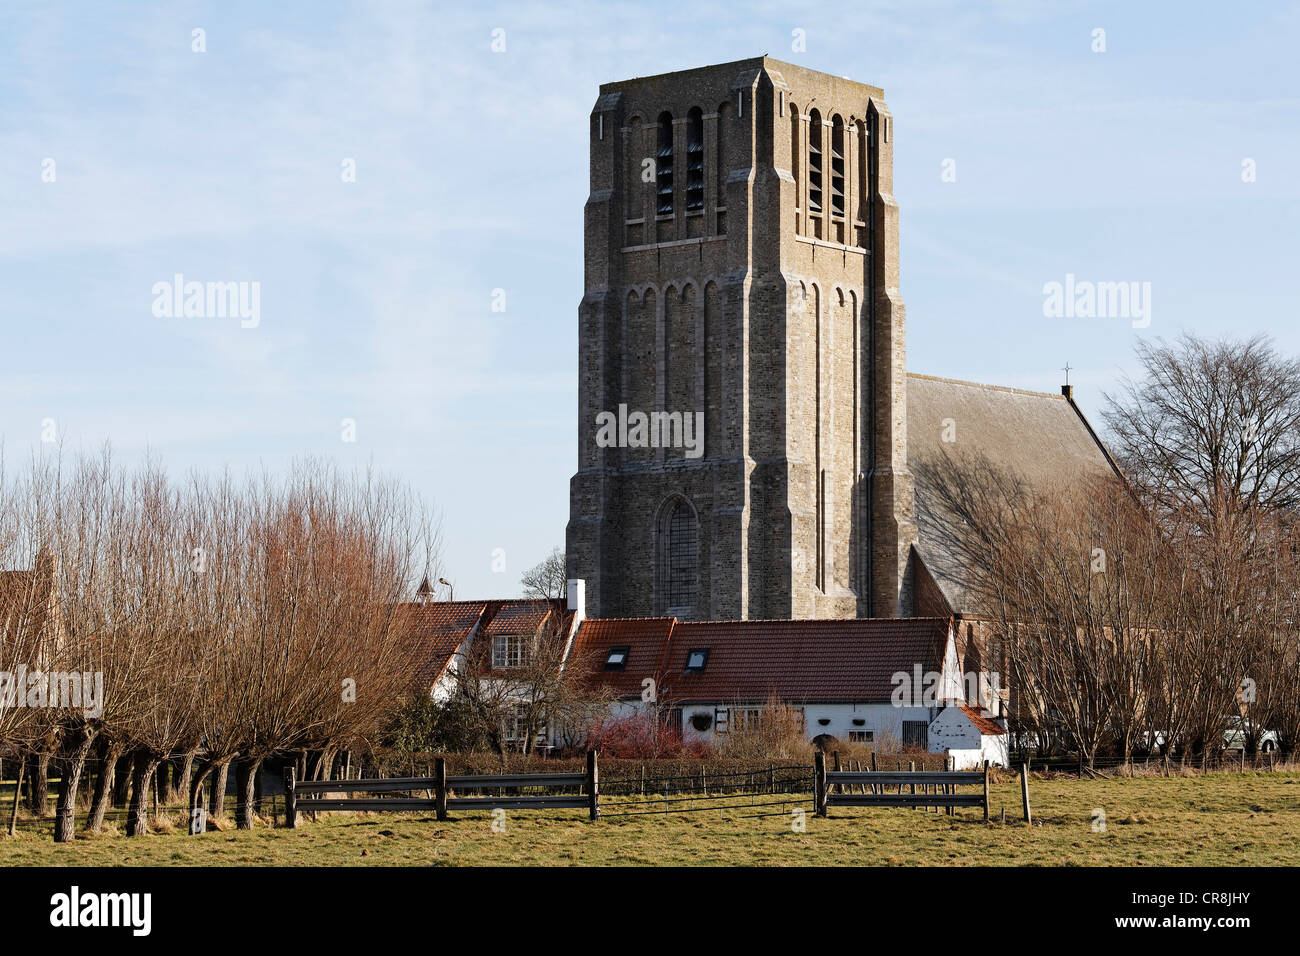 Village d'Ooostkerke-Damme, Flandre occidentale, Belgique, Europe Banque D'Images